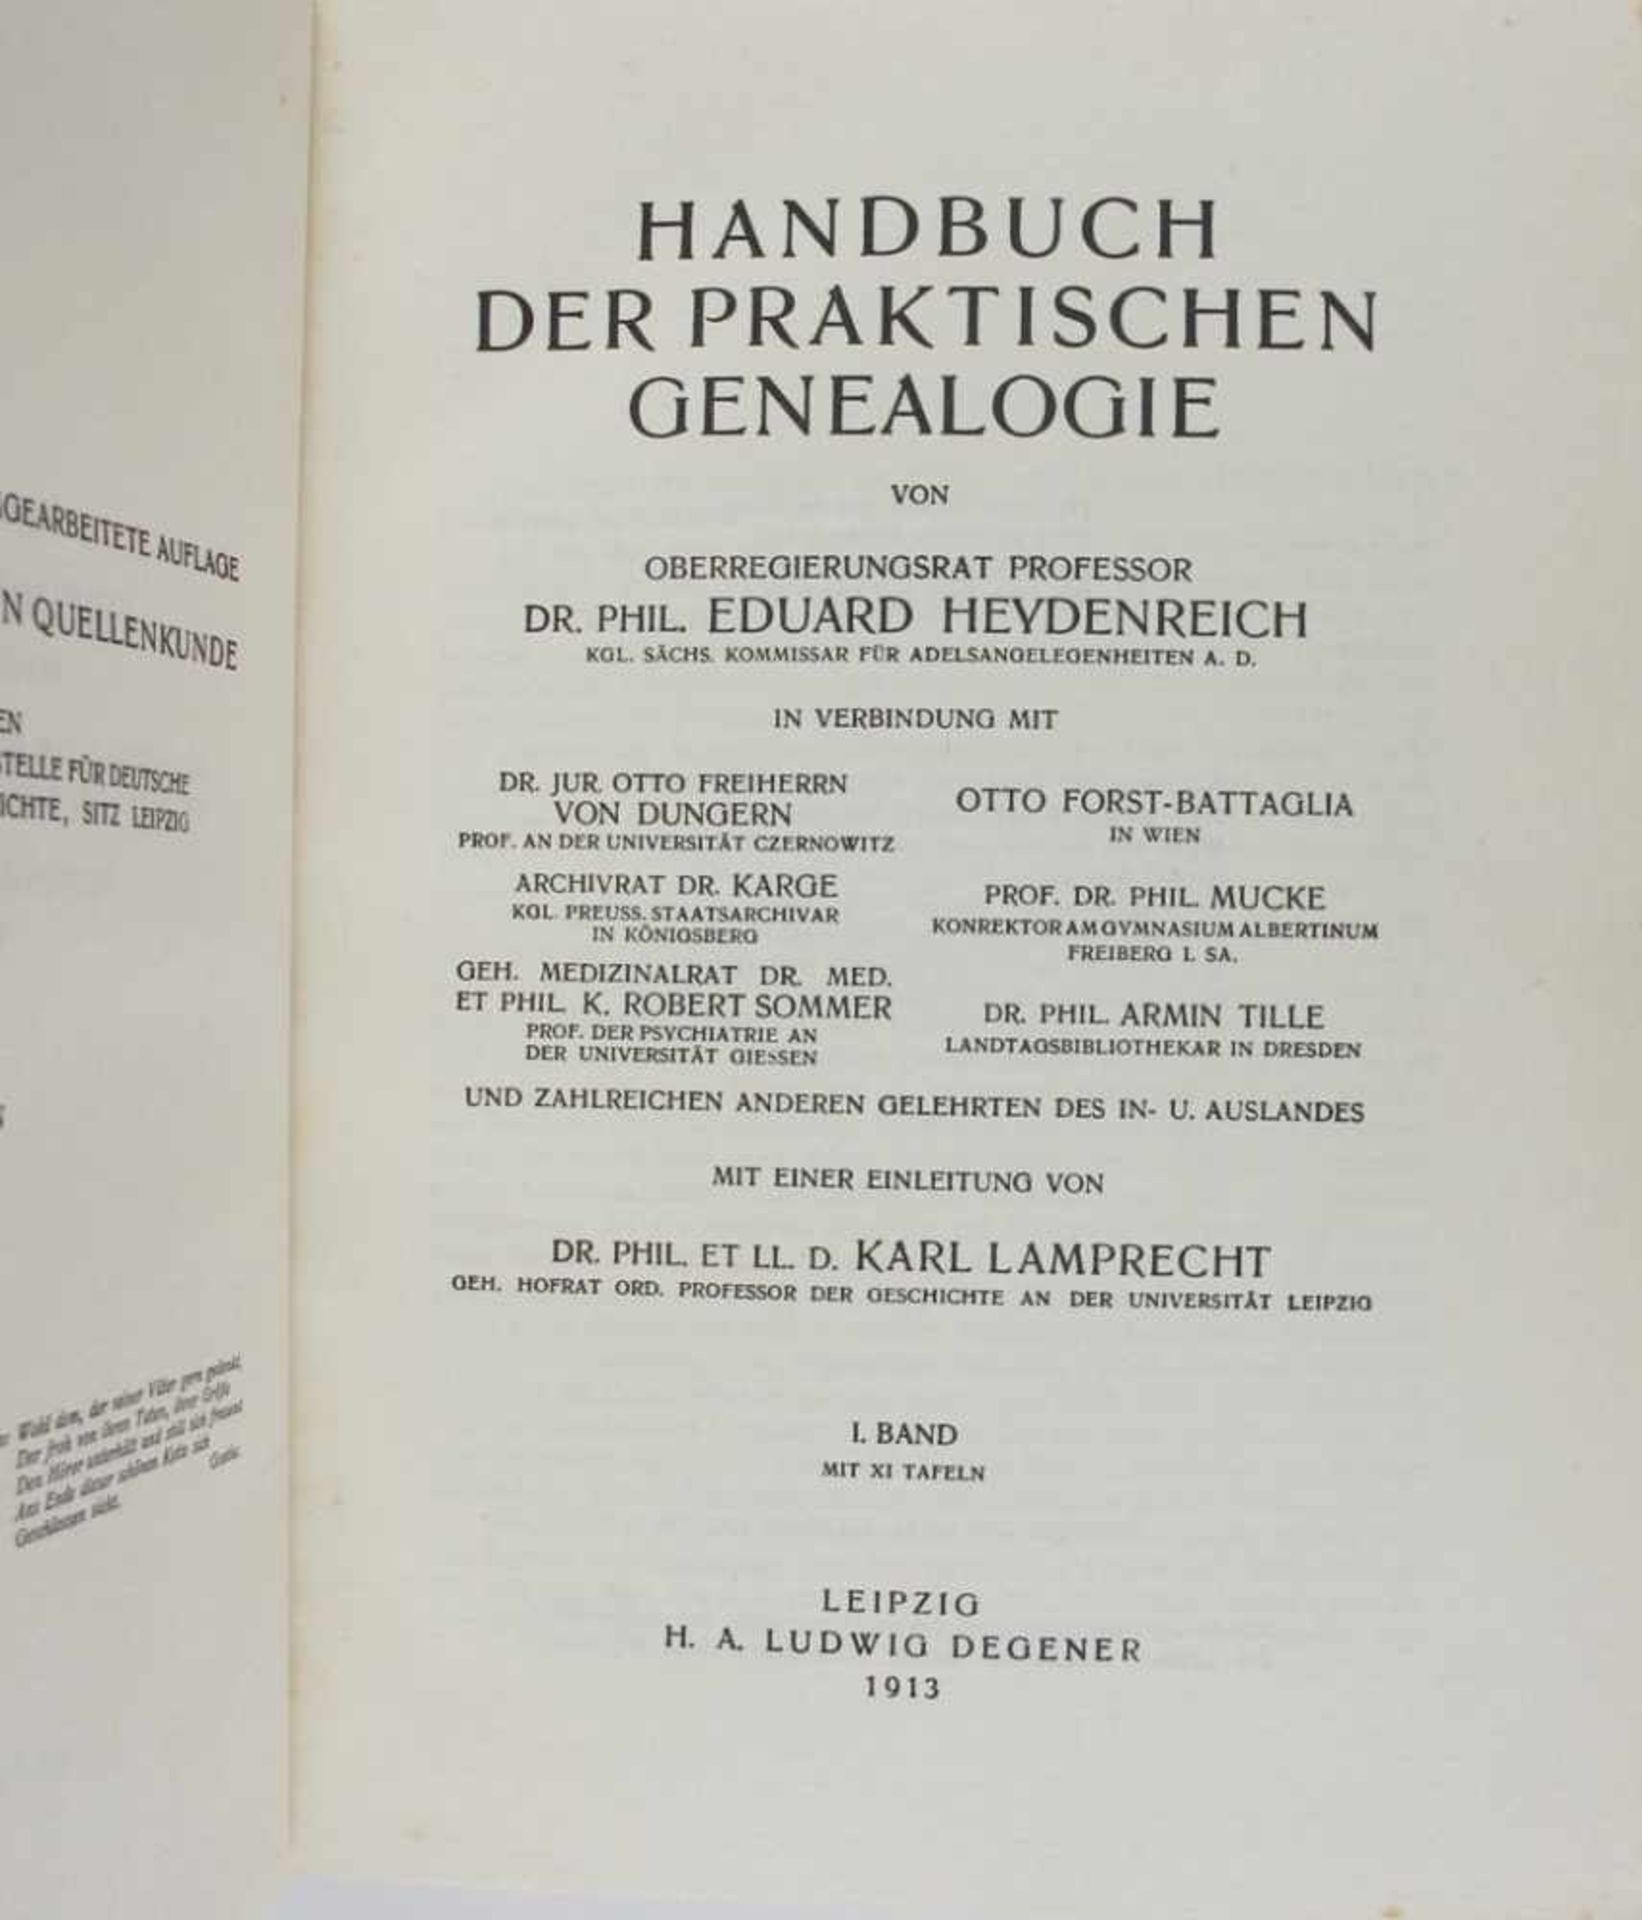 Genealogie: Heydenreich, Dr. Eduard (Kgl. Sächs. Kommissar für Adelsangelegenheiten). Handbuch der